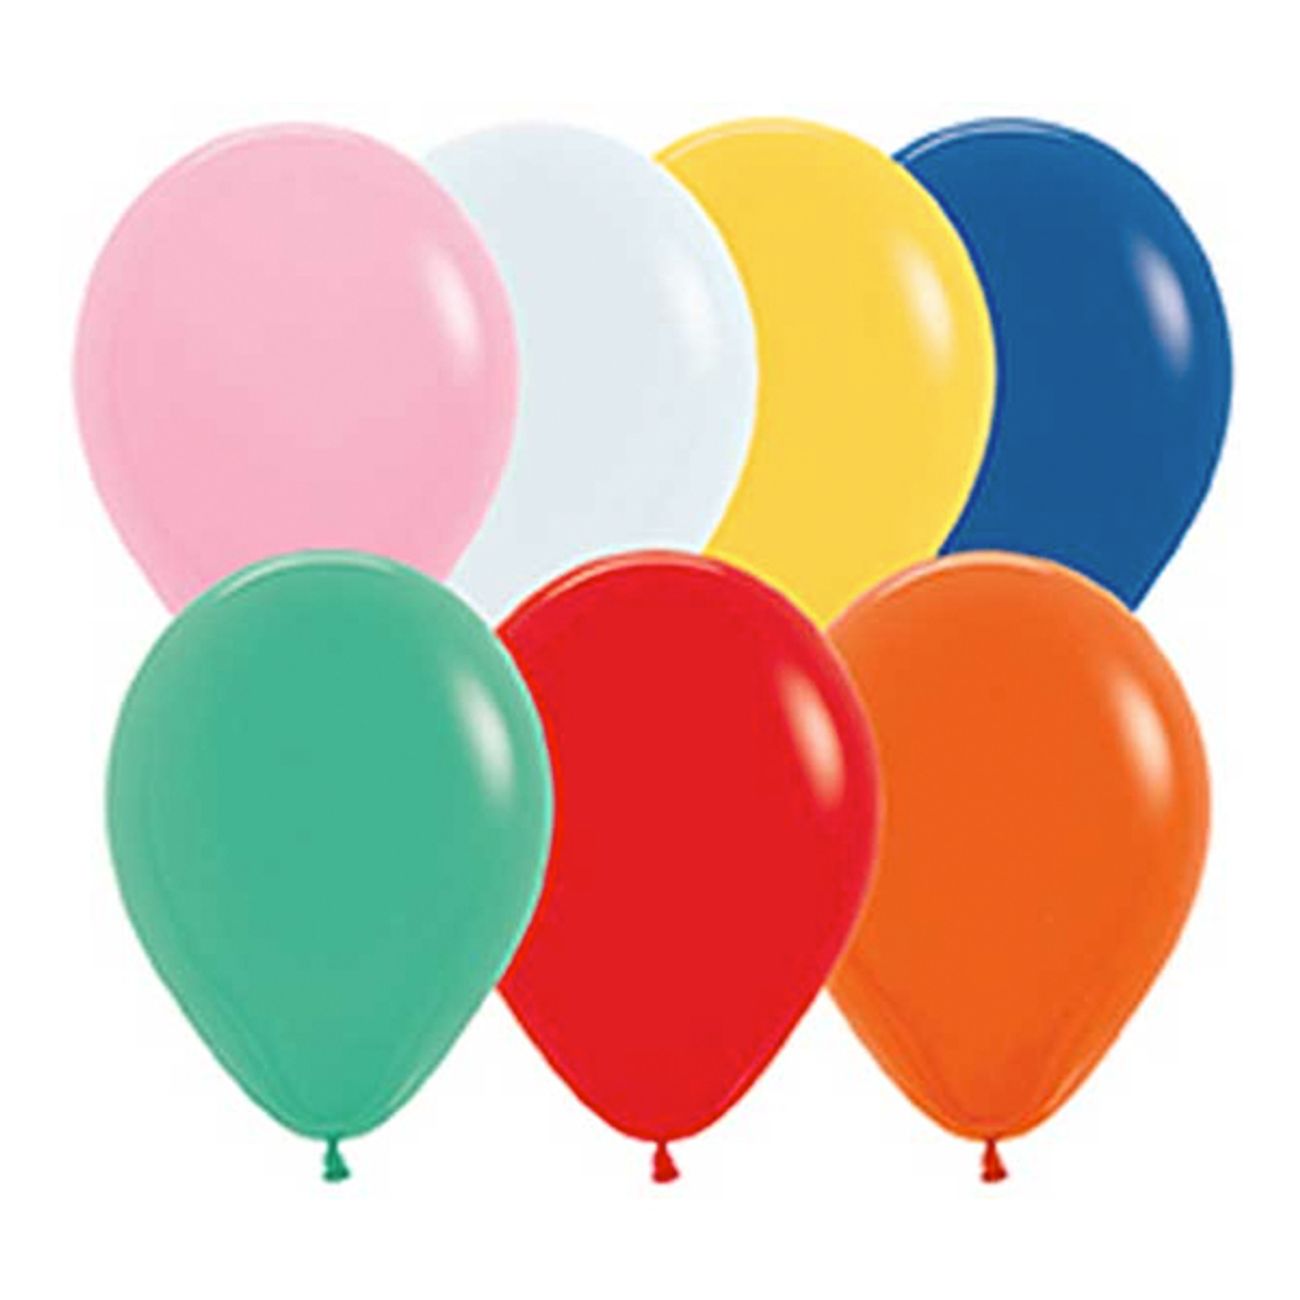 stora-ballonger-flerfargade-1